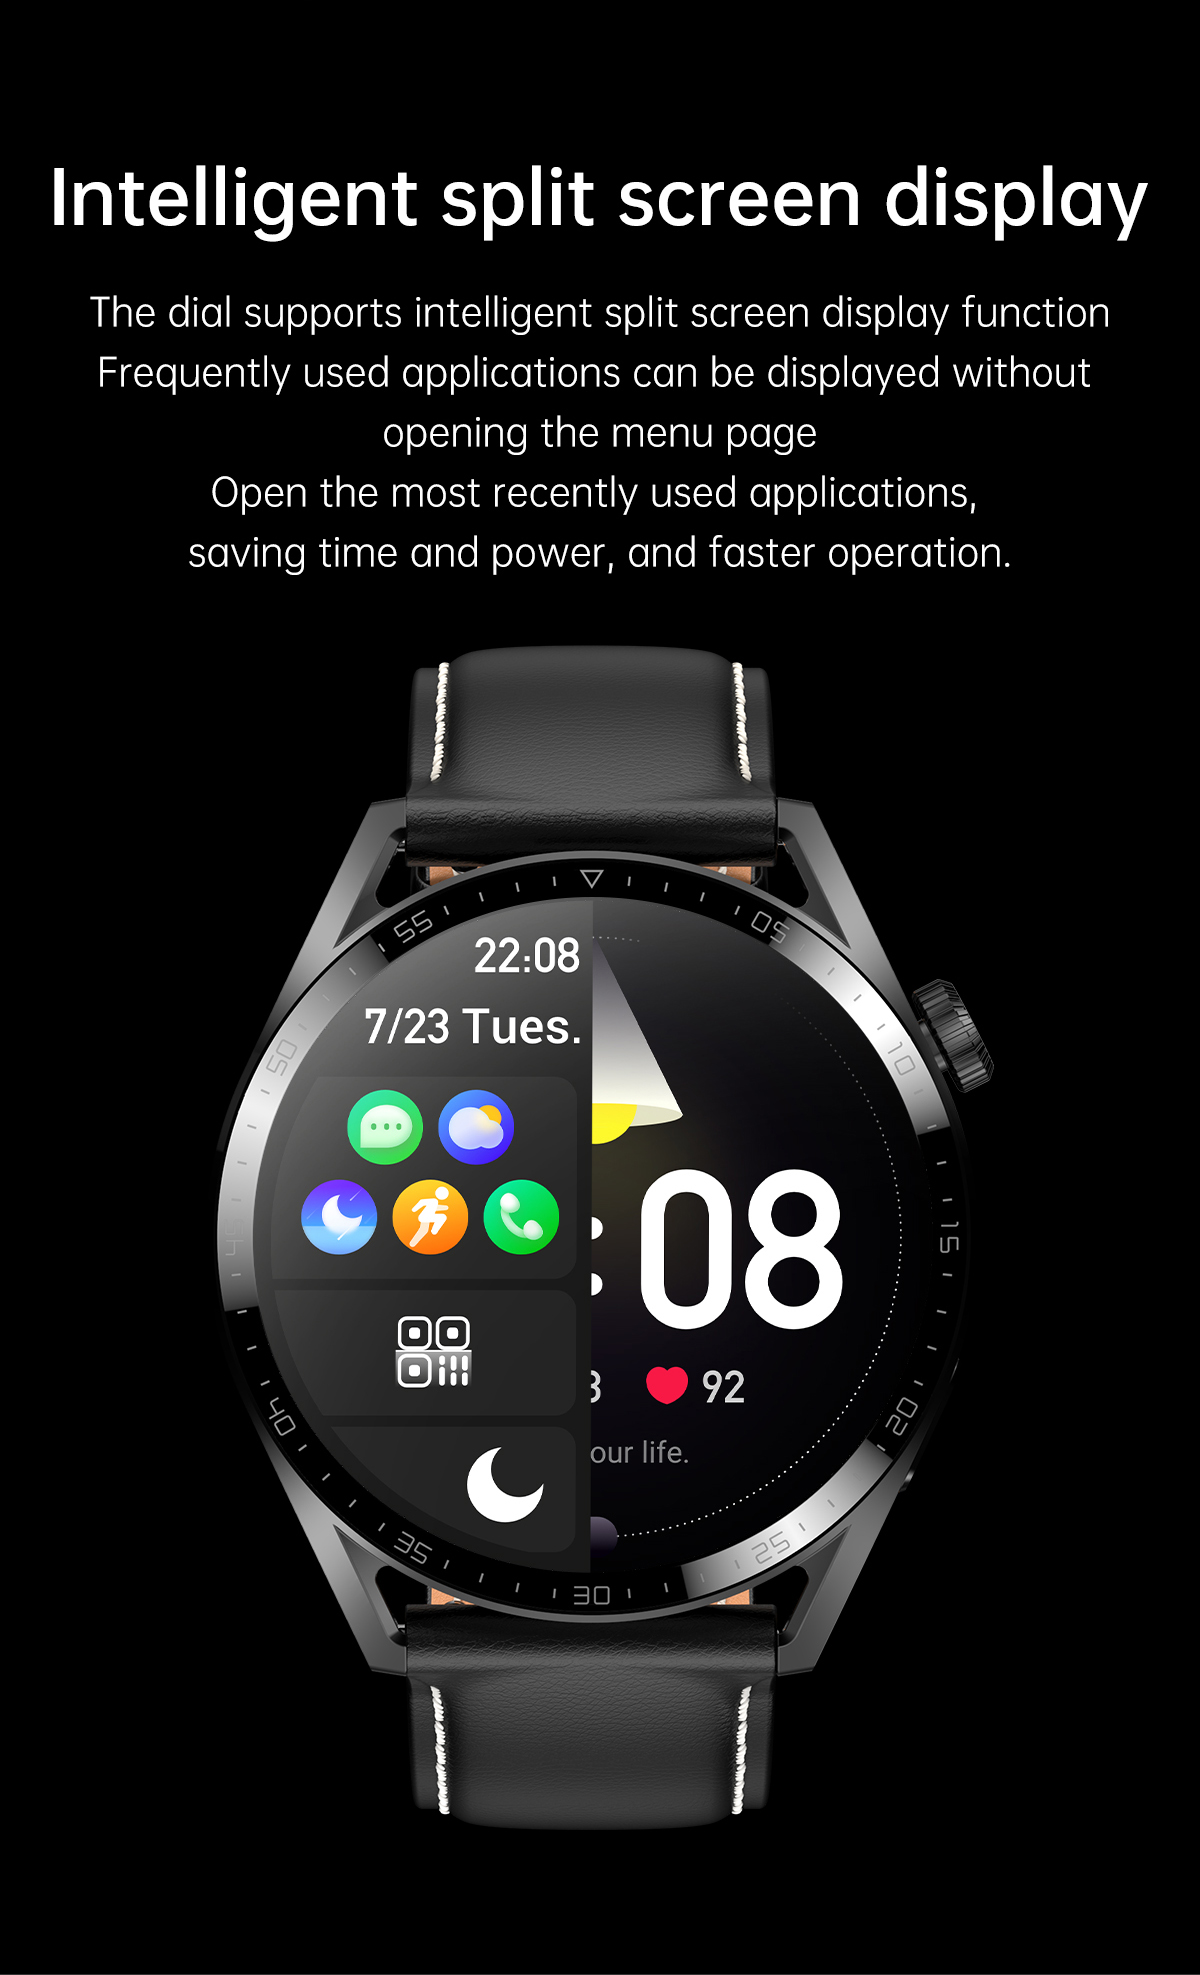 適用於 Android 手機的智能手錶